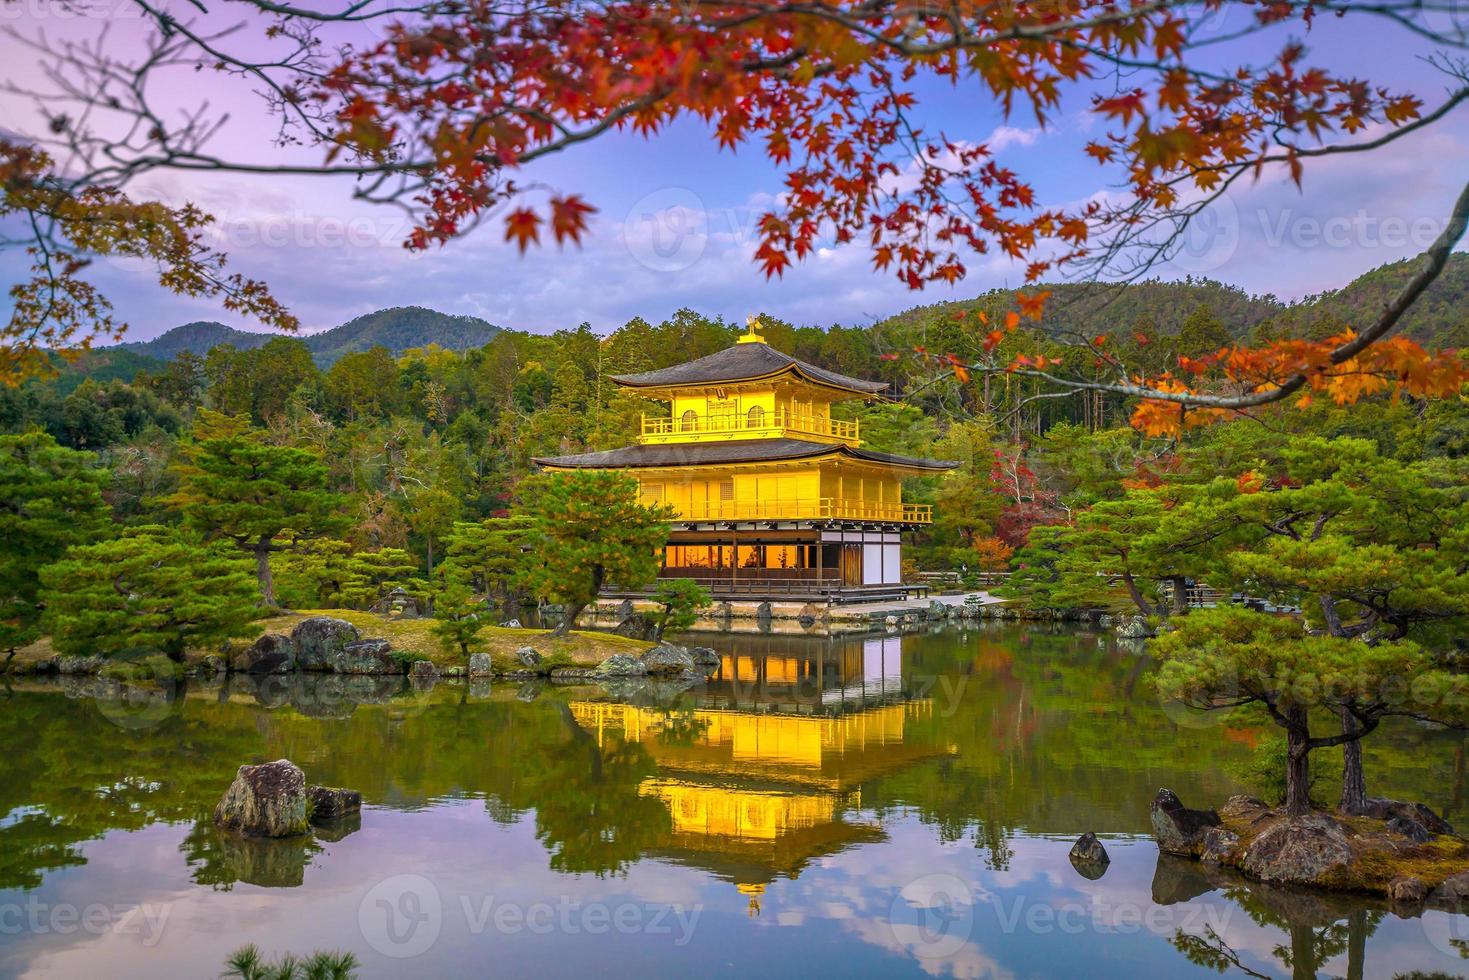 o pavilhão dourado do templo kinkaku-ji em Kyoto, Japão foto